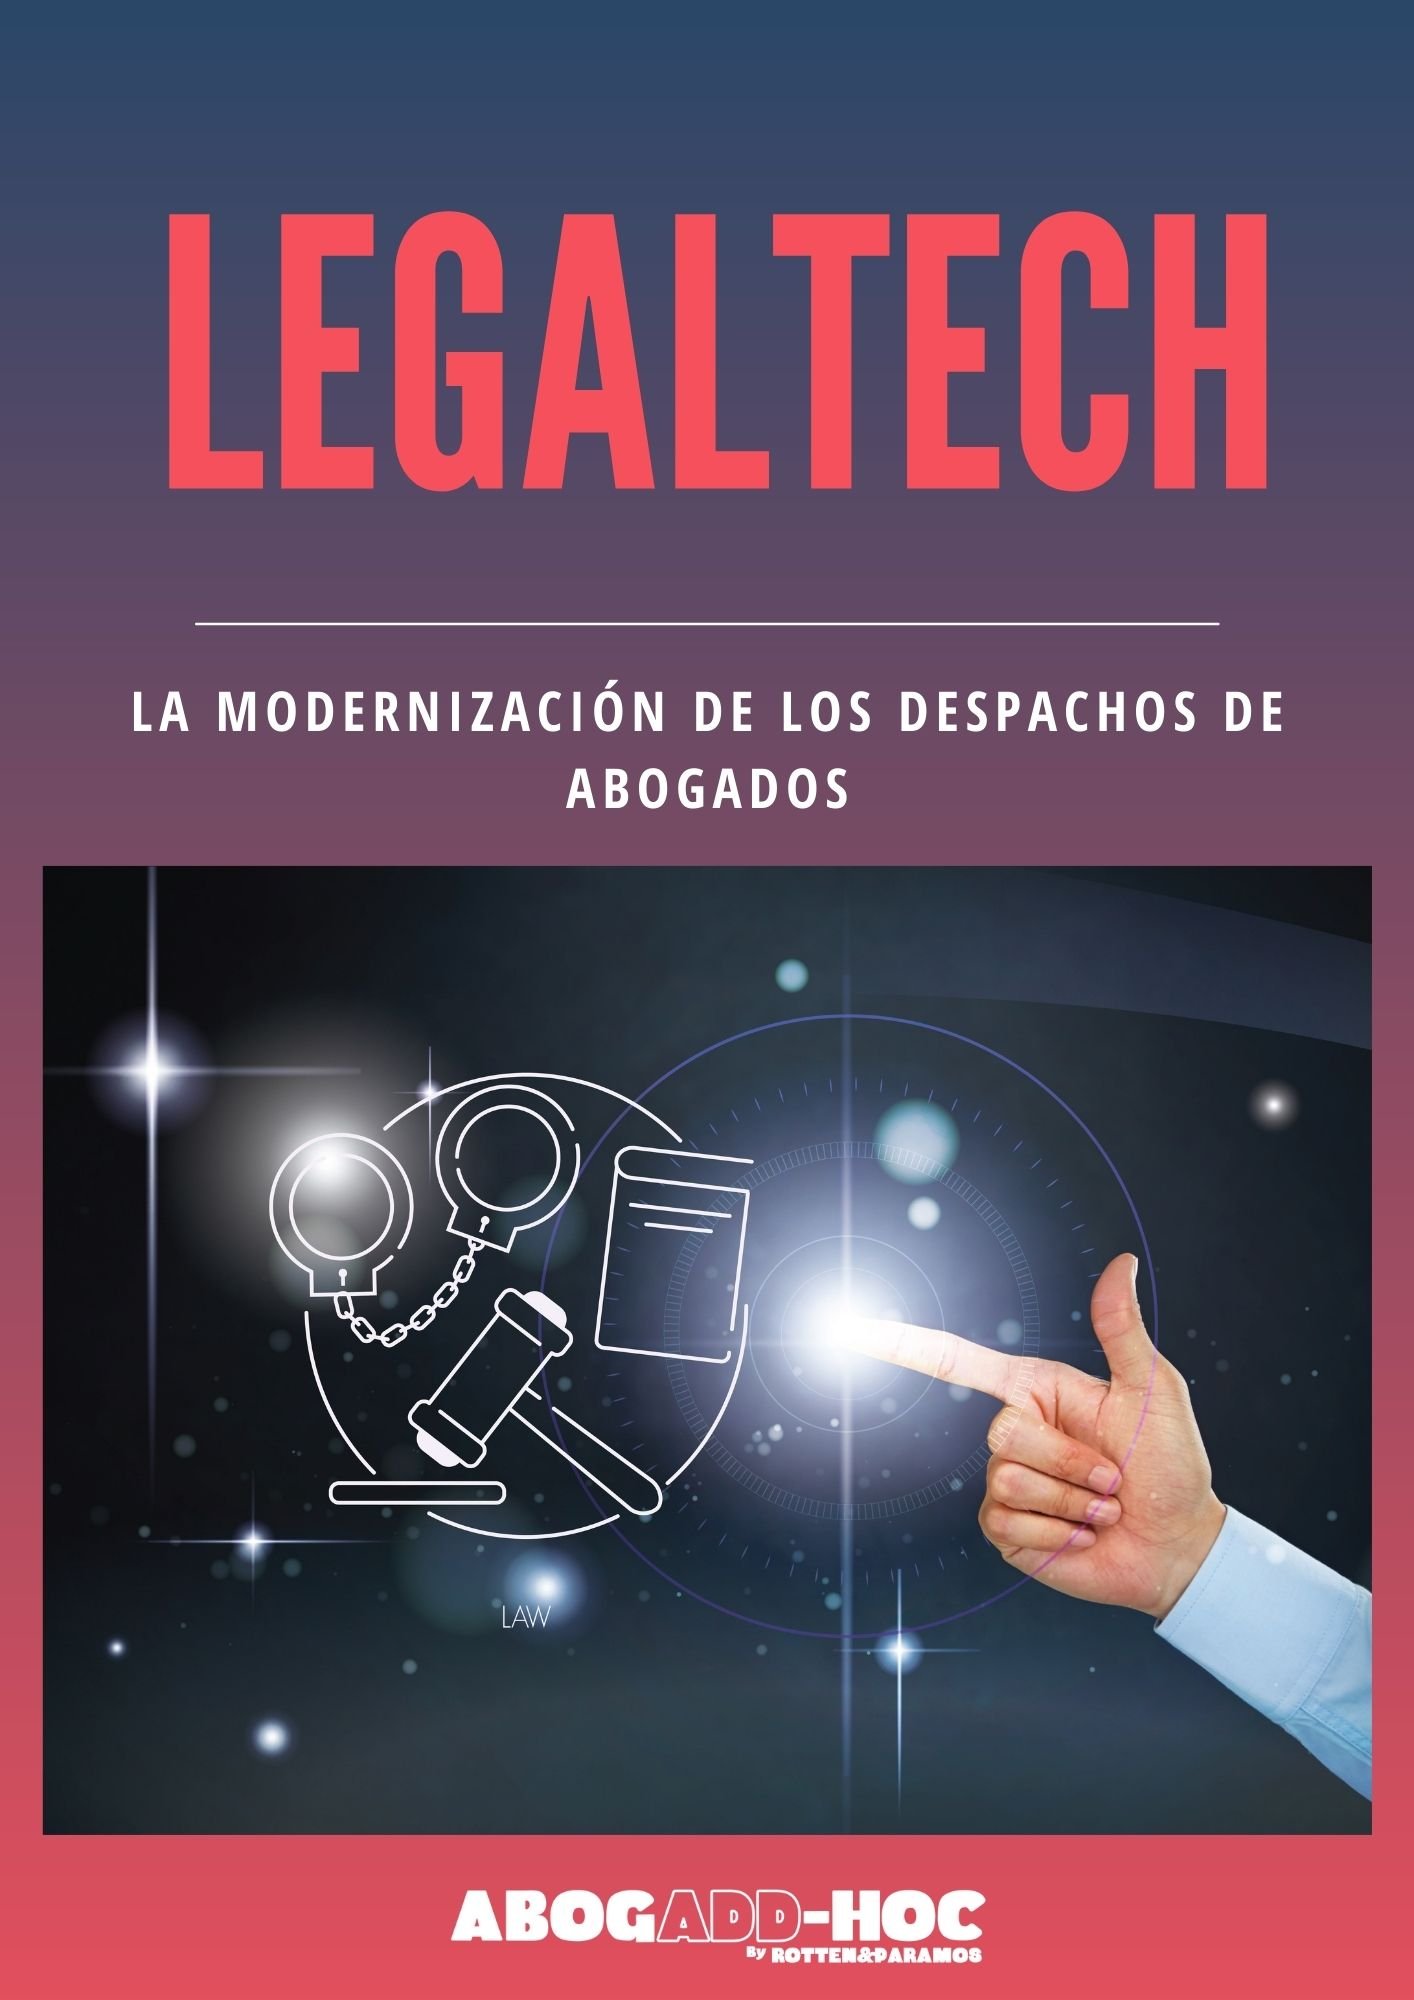 E-book Legaltech.pdf